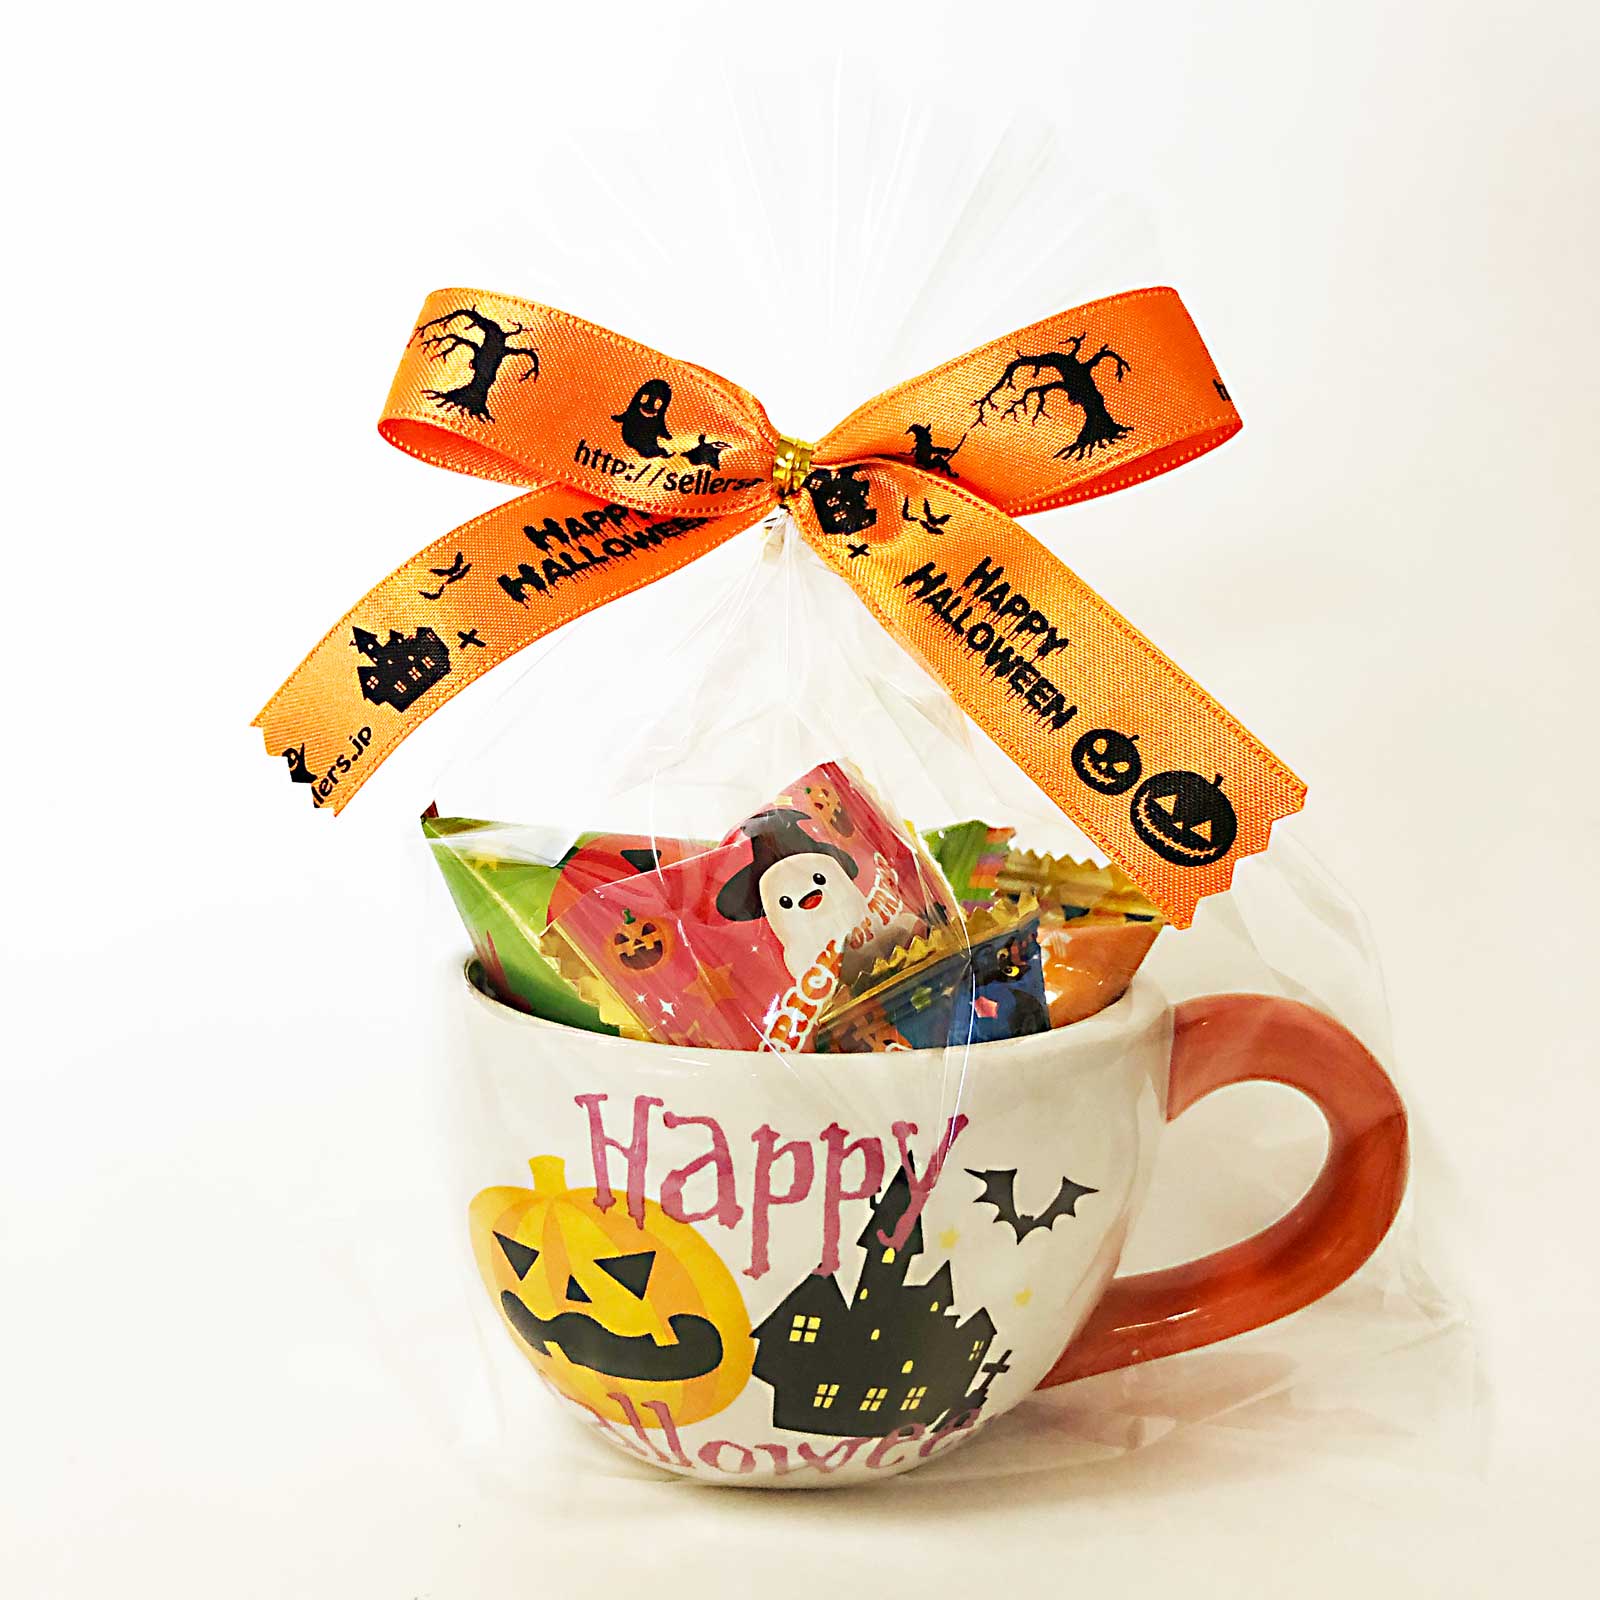 ハロウィンマグカップホラー 季節商品 期間限定 ハロウィン商品 お菓子の詰め合わせの通販ならセラーズのオンラインショップ